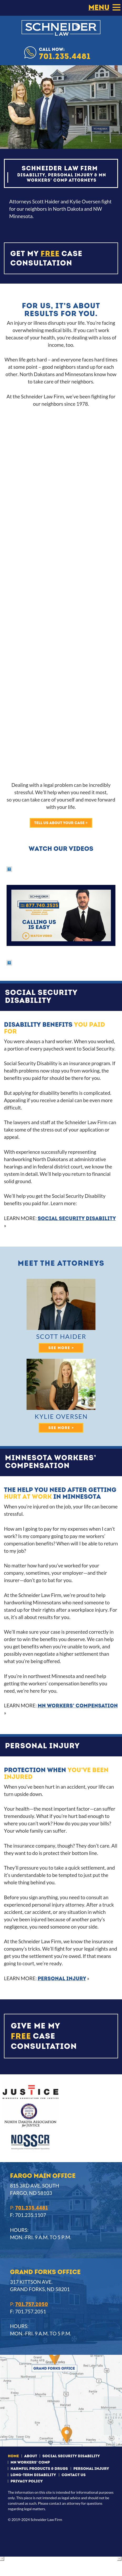 Schneider Mac - Fargo ND Lawyers